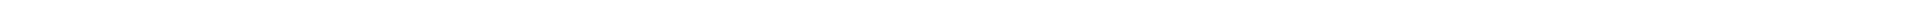 Элайнеры - цены на капы для выравнивания (исправления) прикуса, цены в Астане, Алматы, Атырау, Усть-Каменогорск, Уральск, Кокшетау в Казахстане, фото 9